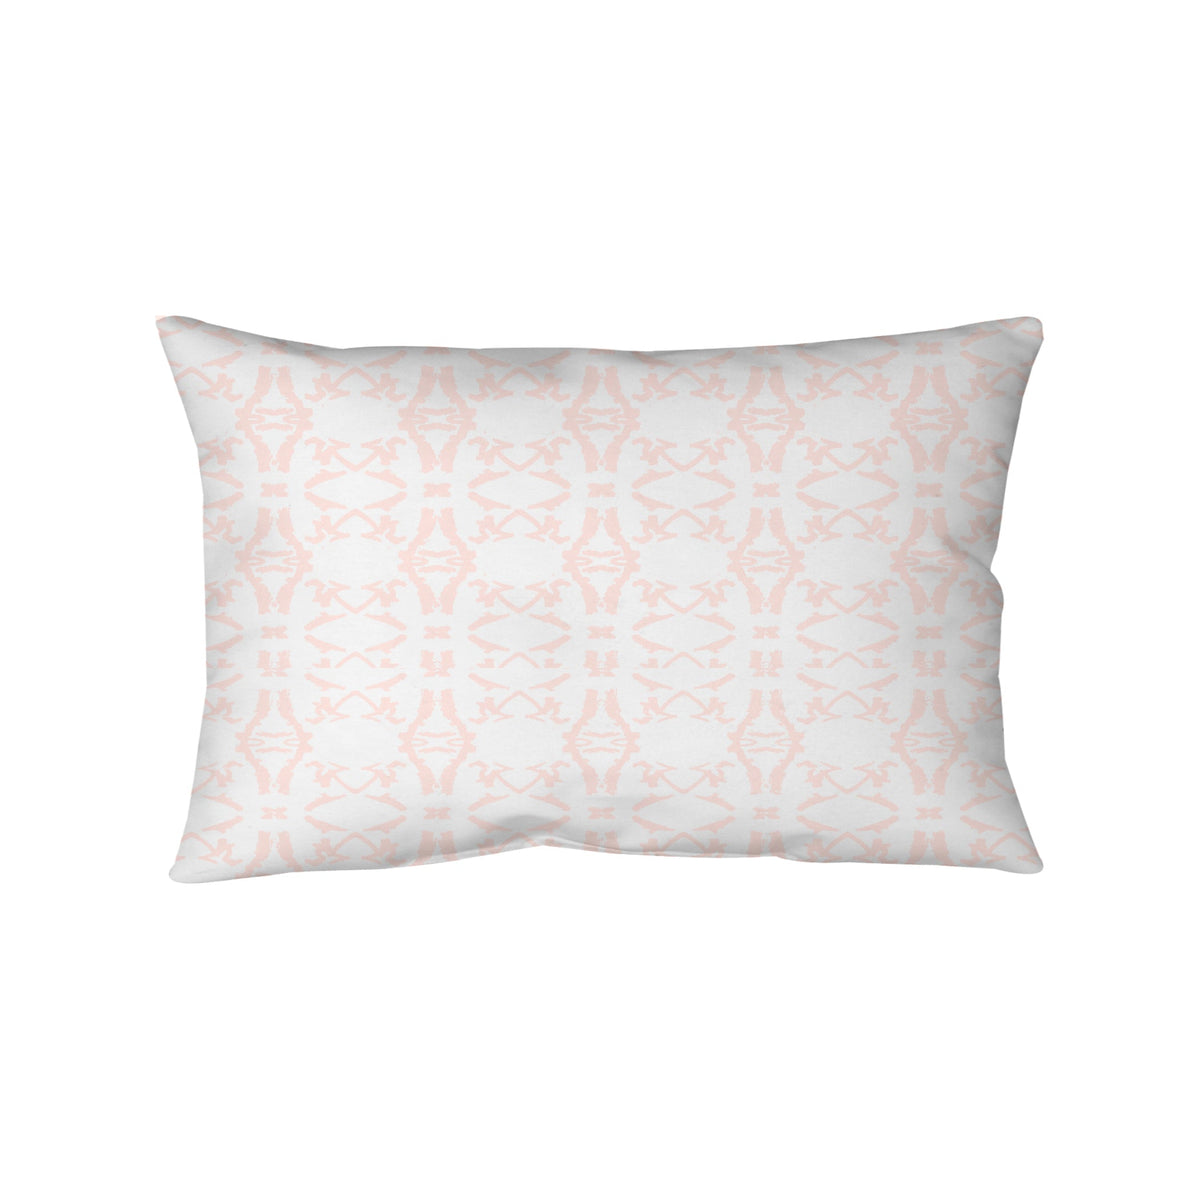 Bolster Pillow - Monarch Pink Lattice Bedding, Pillows, Bolster Pillow MWW 